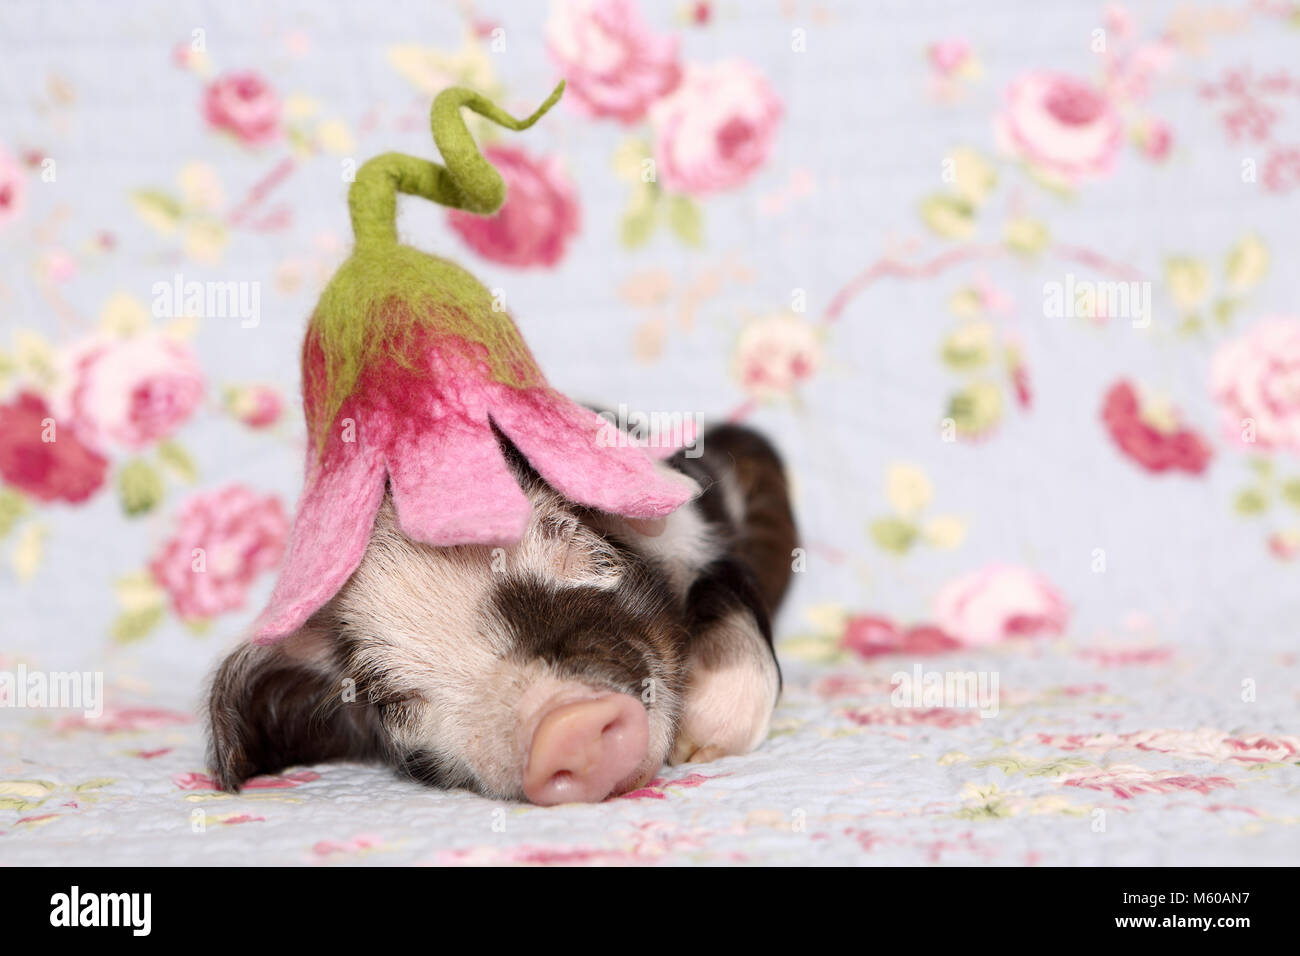 Suini domestici, Turopolje x ?. Maialino (1 settimana fa) indossando un fiore a forma di cappello, dormendo. Studio Immagine contro uno sfondo blu con fiori di rose stampa. Germania Foto Stock